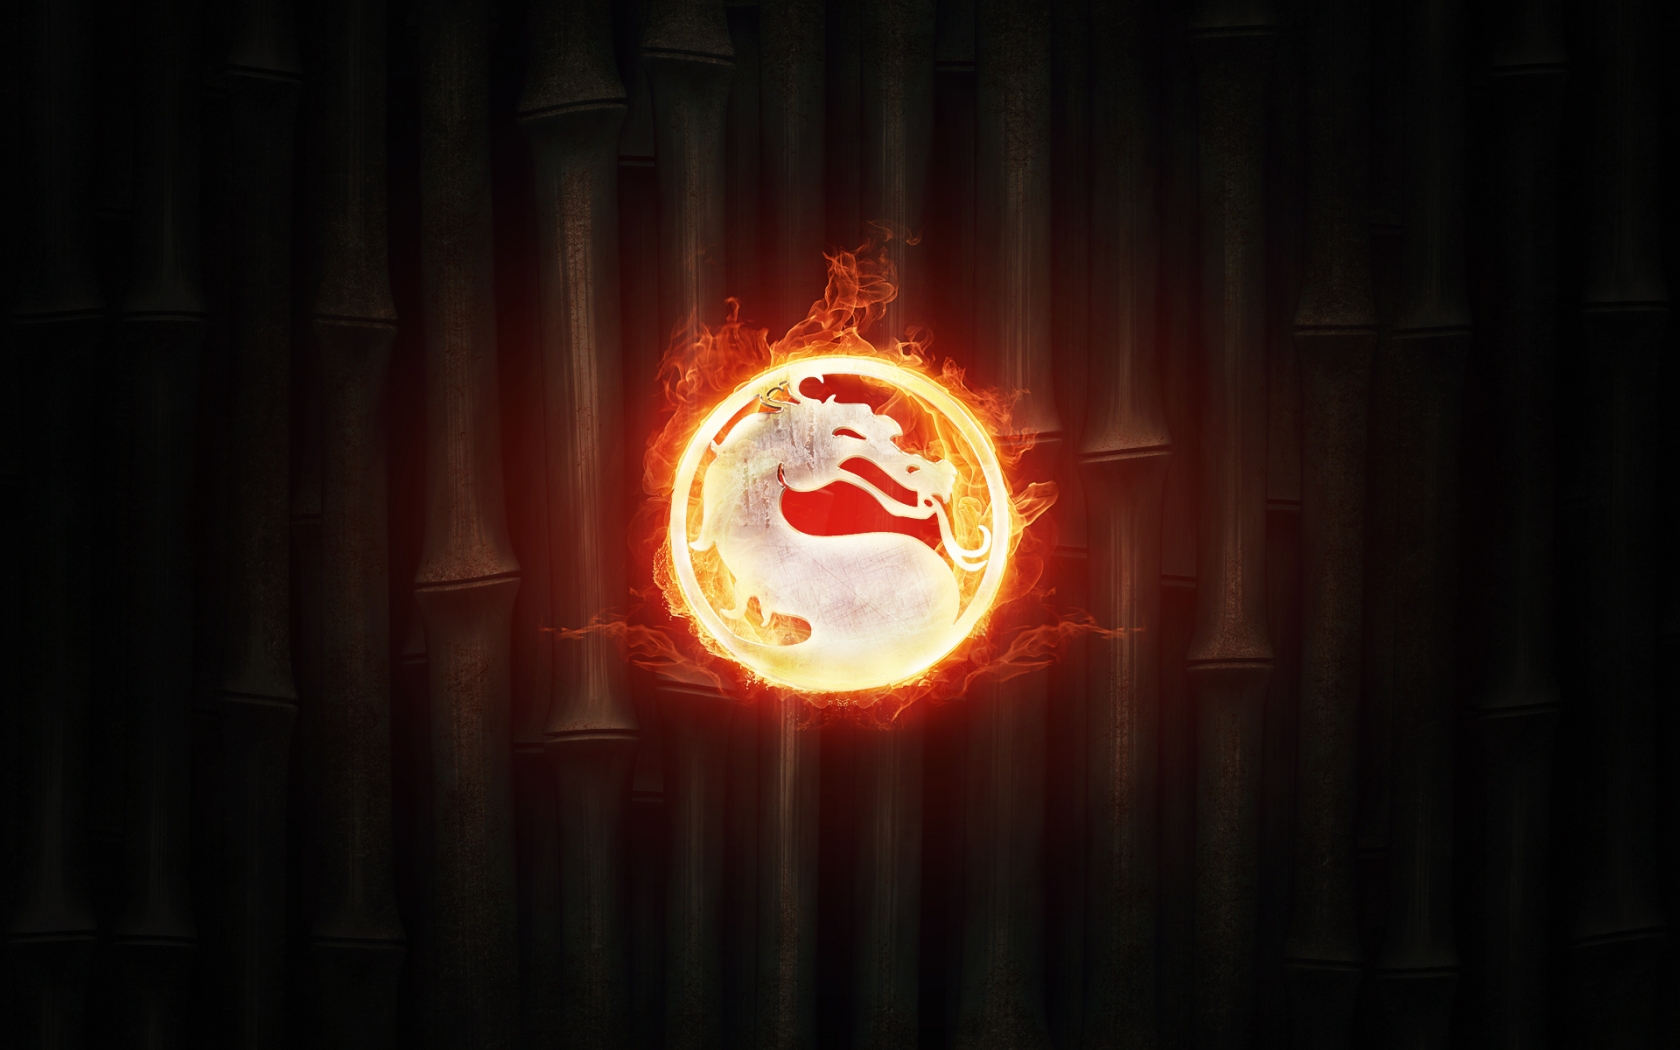 Mortal Kombat Fire for 1680 x 1050 widescreen resolution